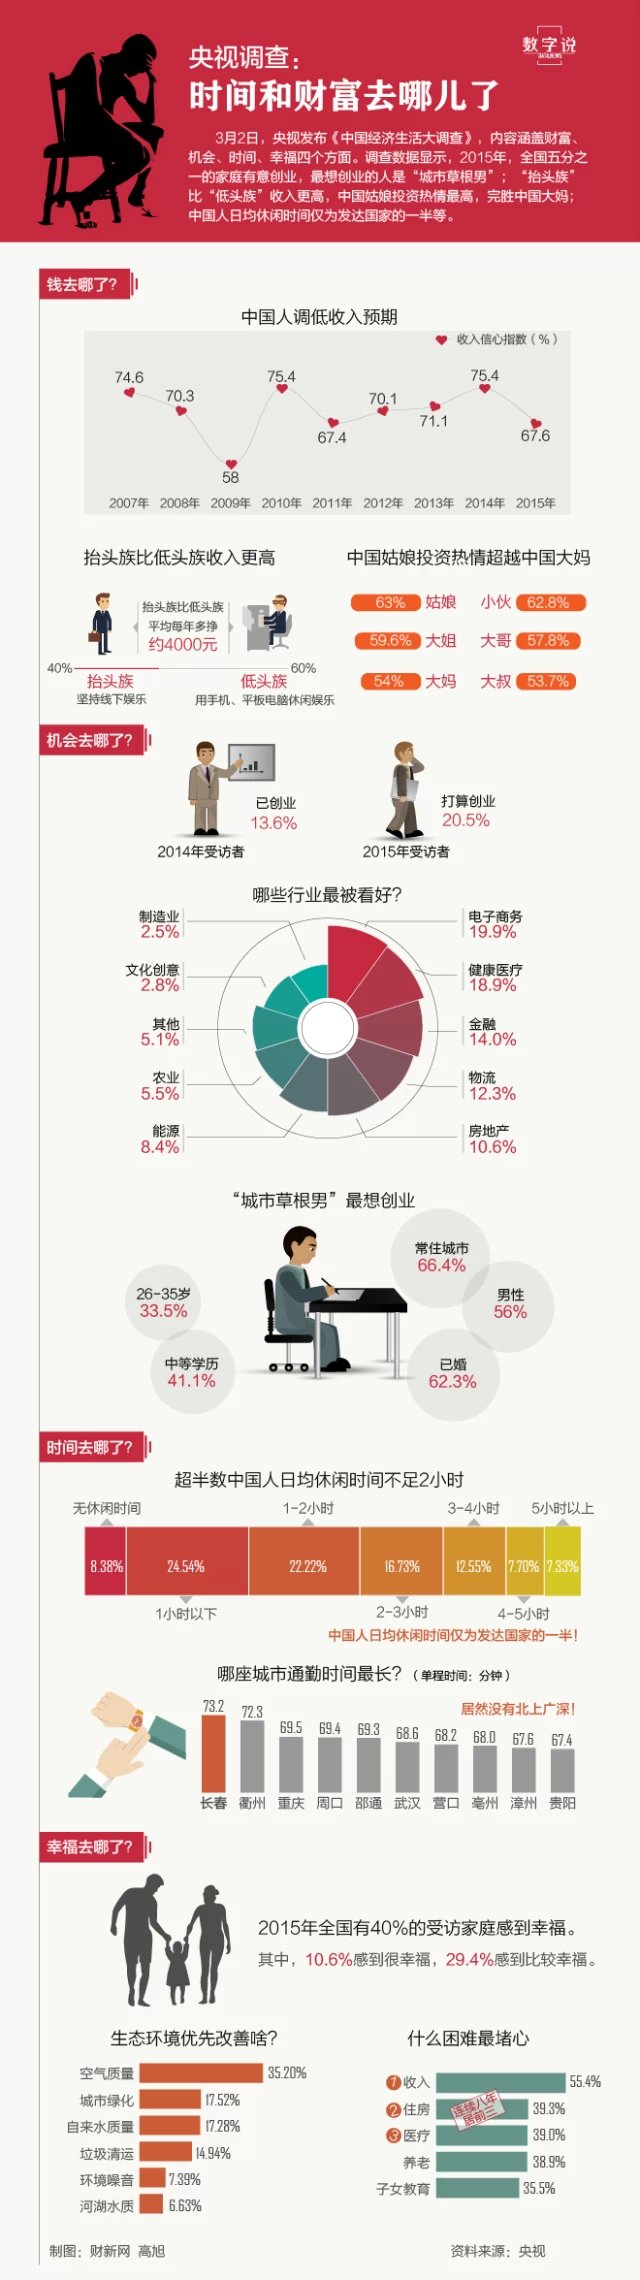 根据央视发布的《中国经济生活大调查》数据显示信息图